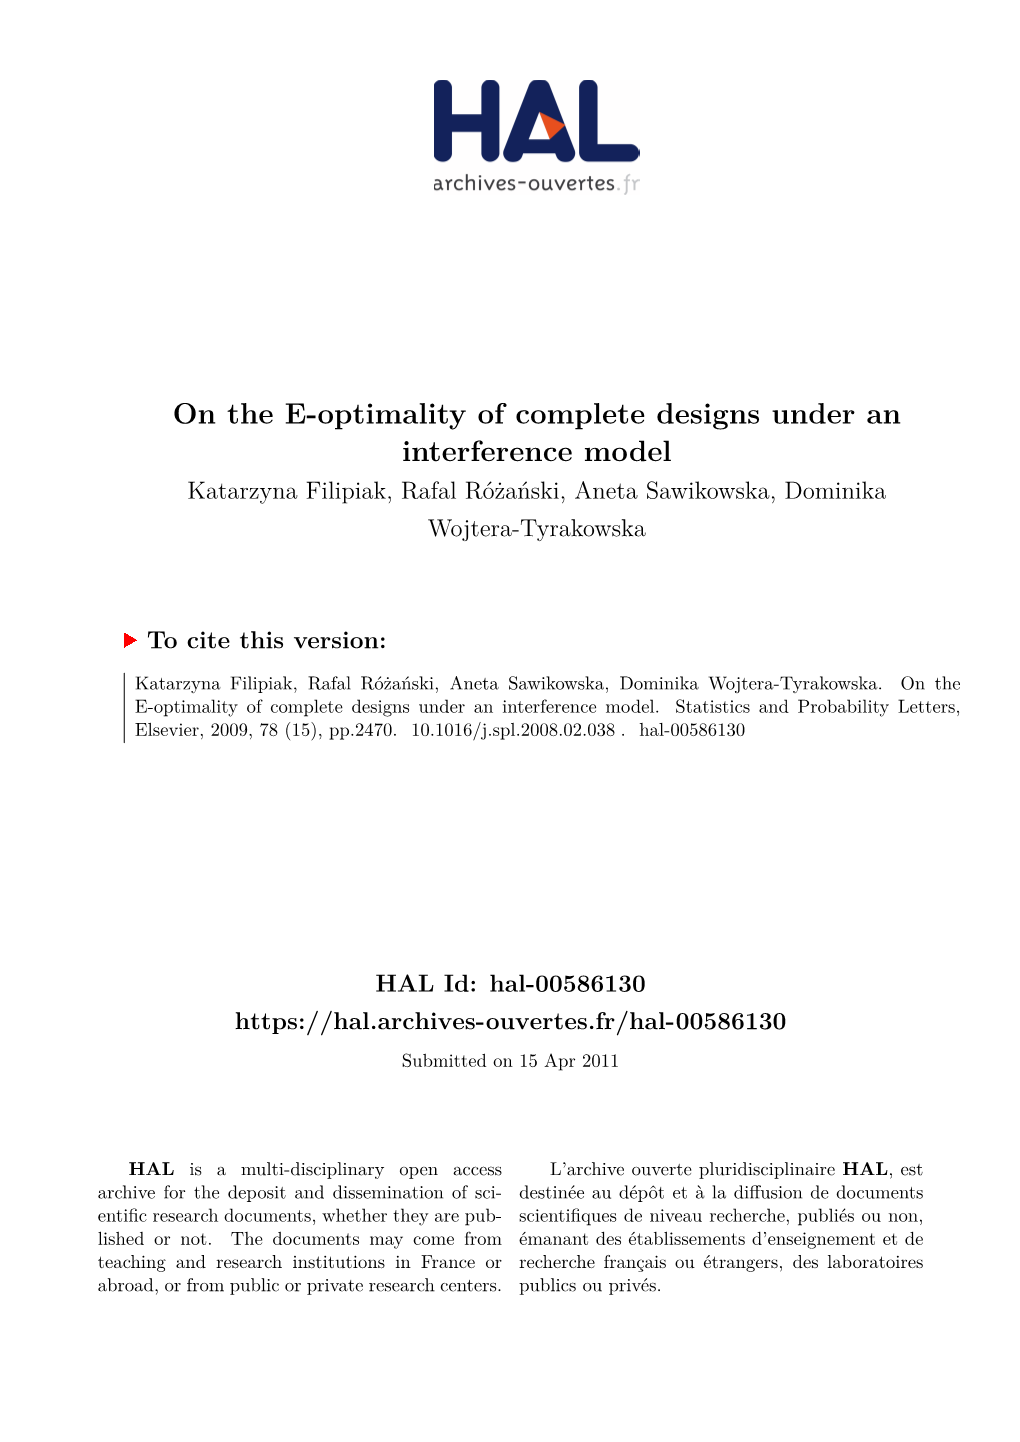 On the E-Optimality of Complete Designs Under an Interference Model Katarzyna Filipiak, Rafal Różański, Aneta Sawikowska, Dominika Wojtera-Tyrakowska